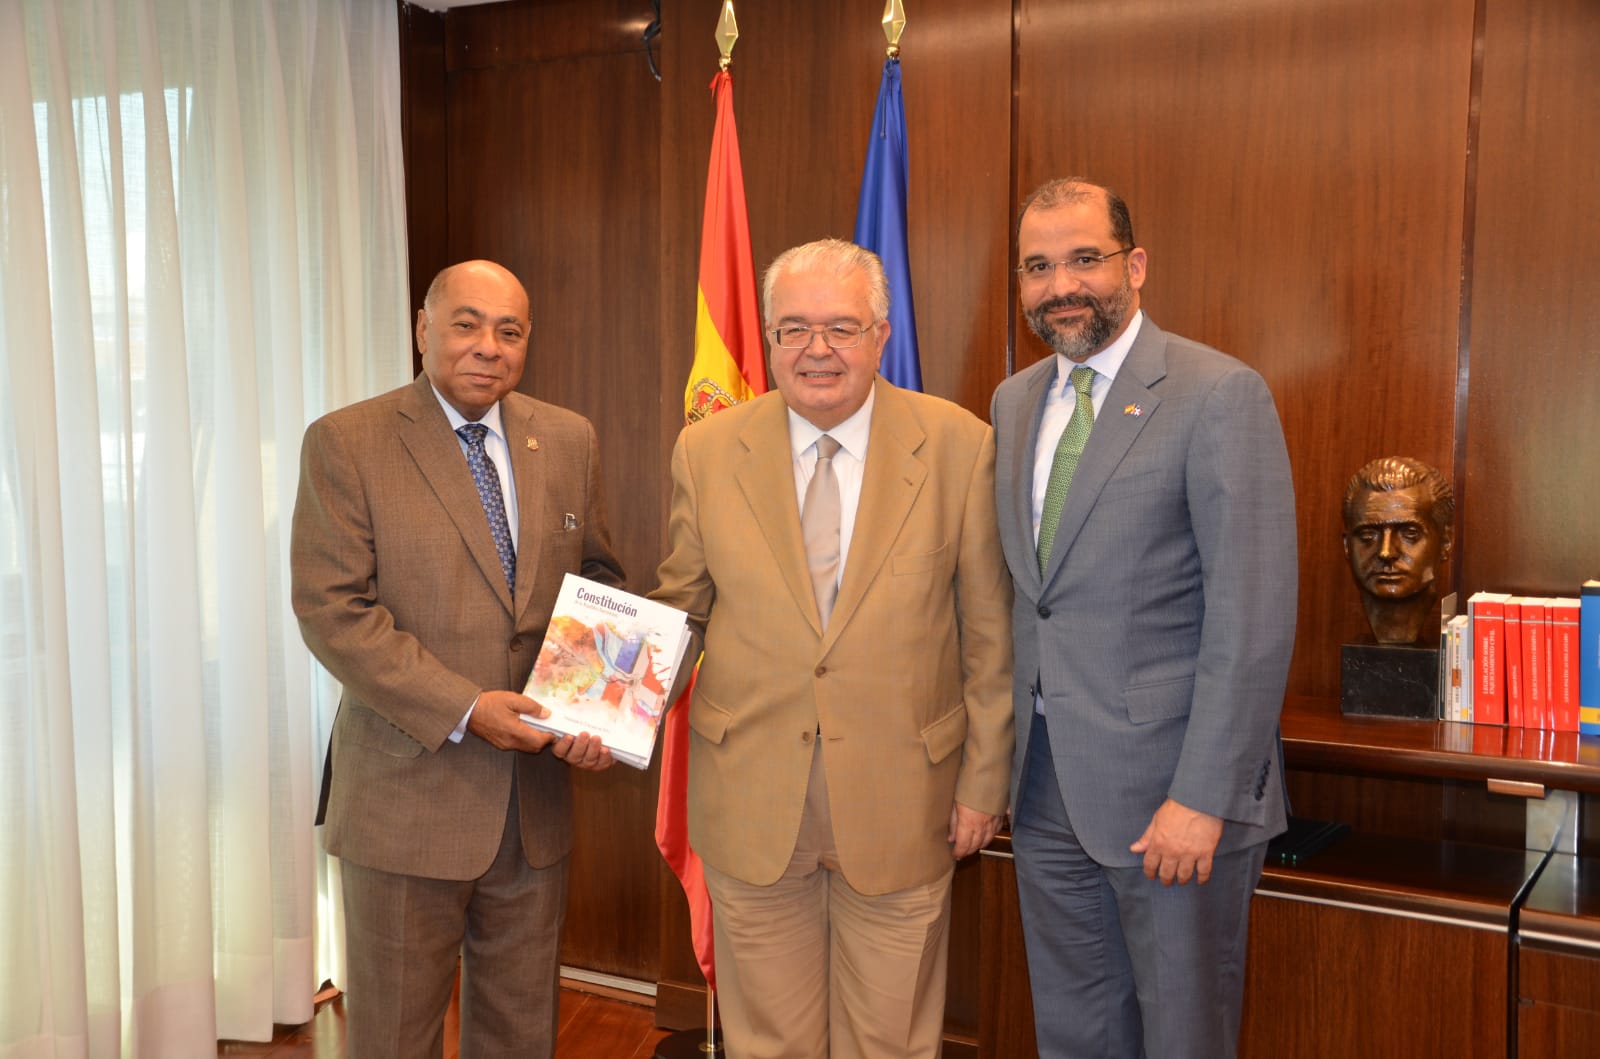 Tribunales constitucionales dominicano y español profundizan relaciones bilaterales